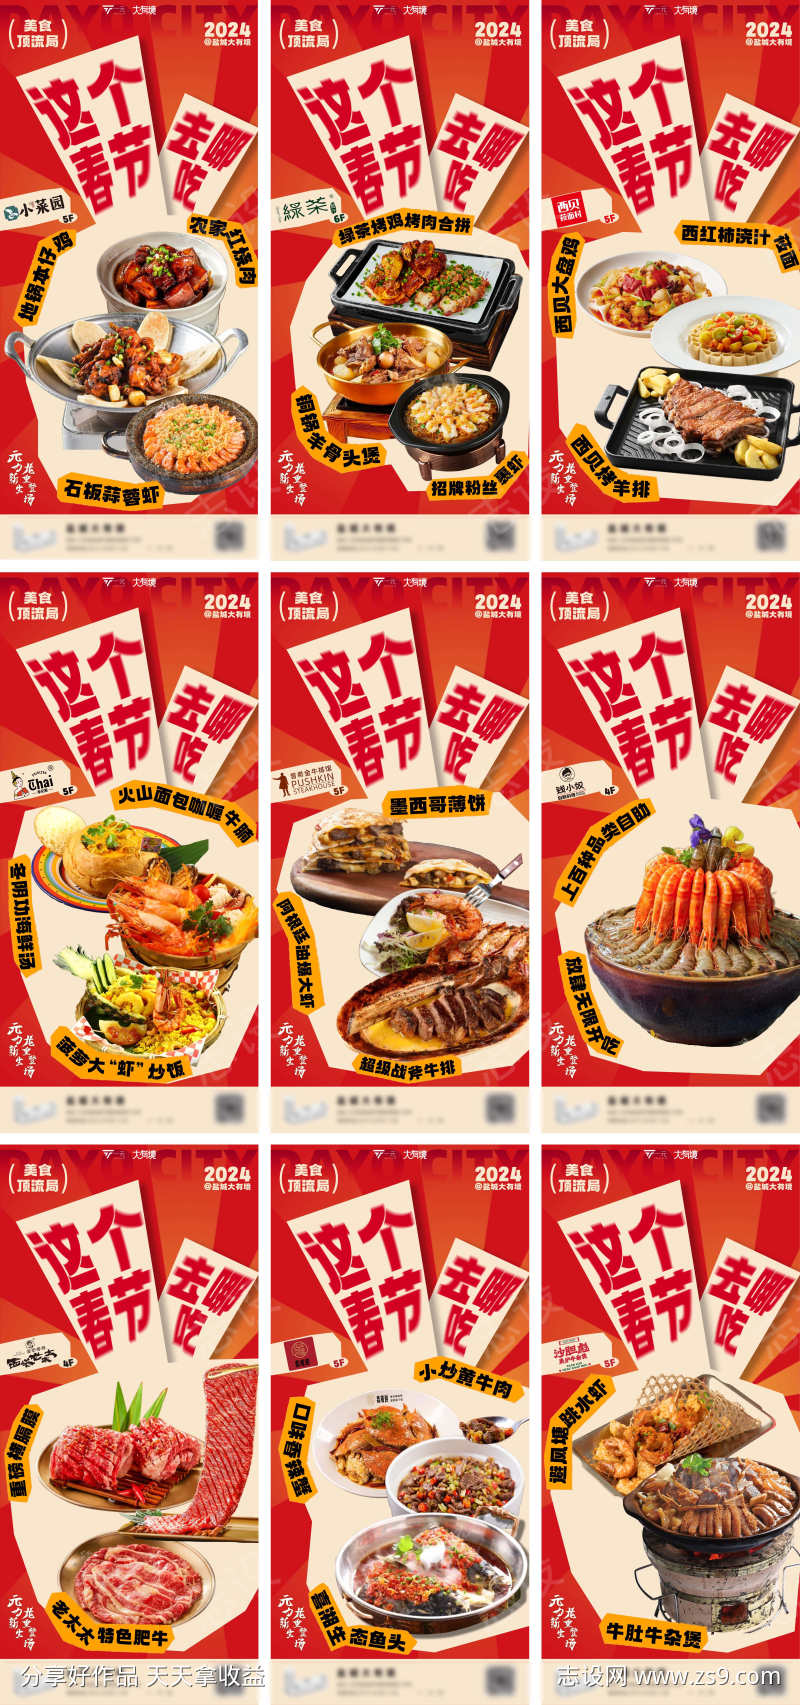 美食餐饮系列海报